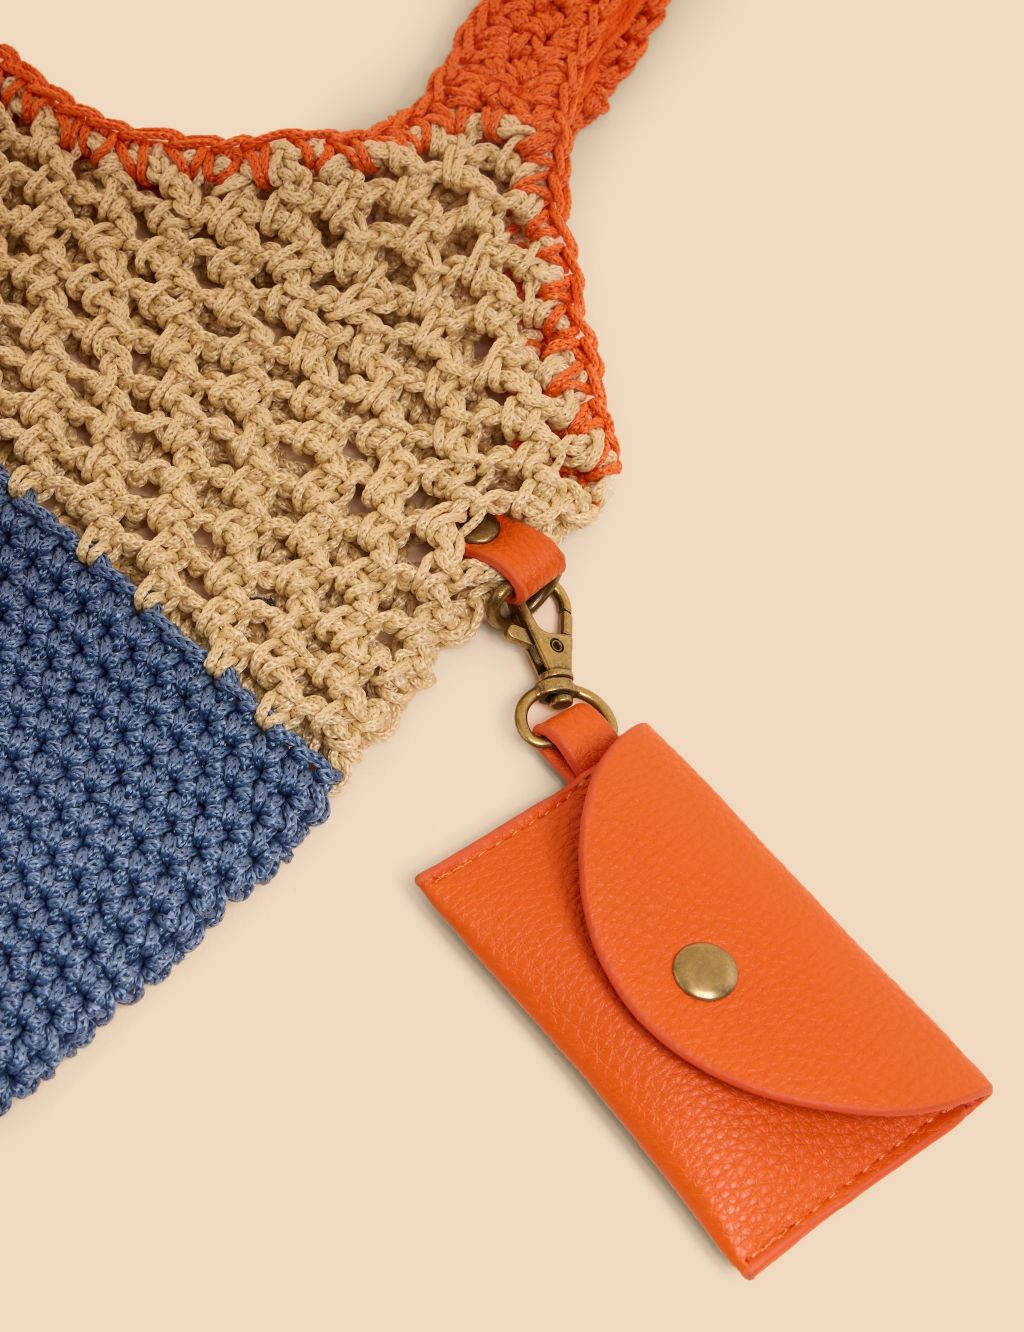 Crochet Tote Bag 2 of 3